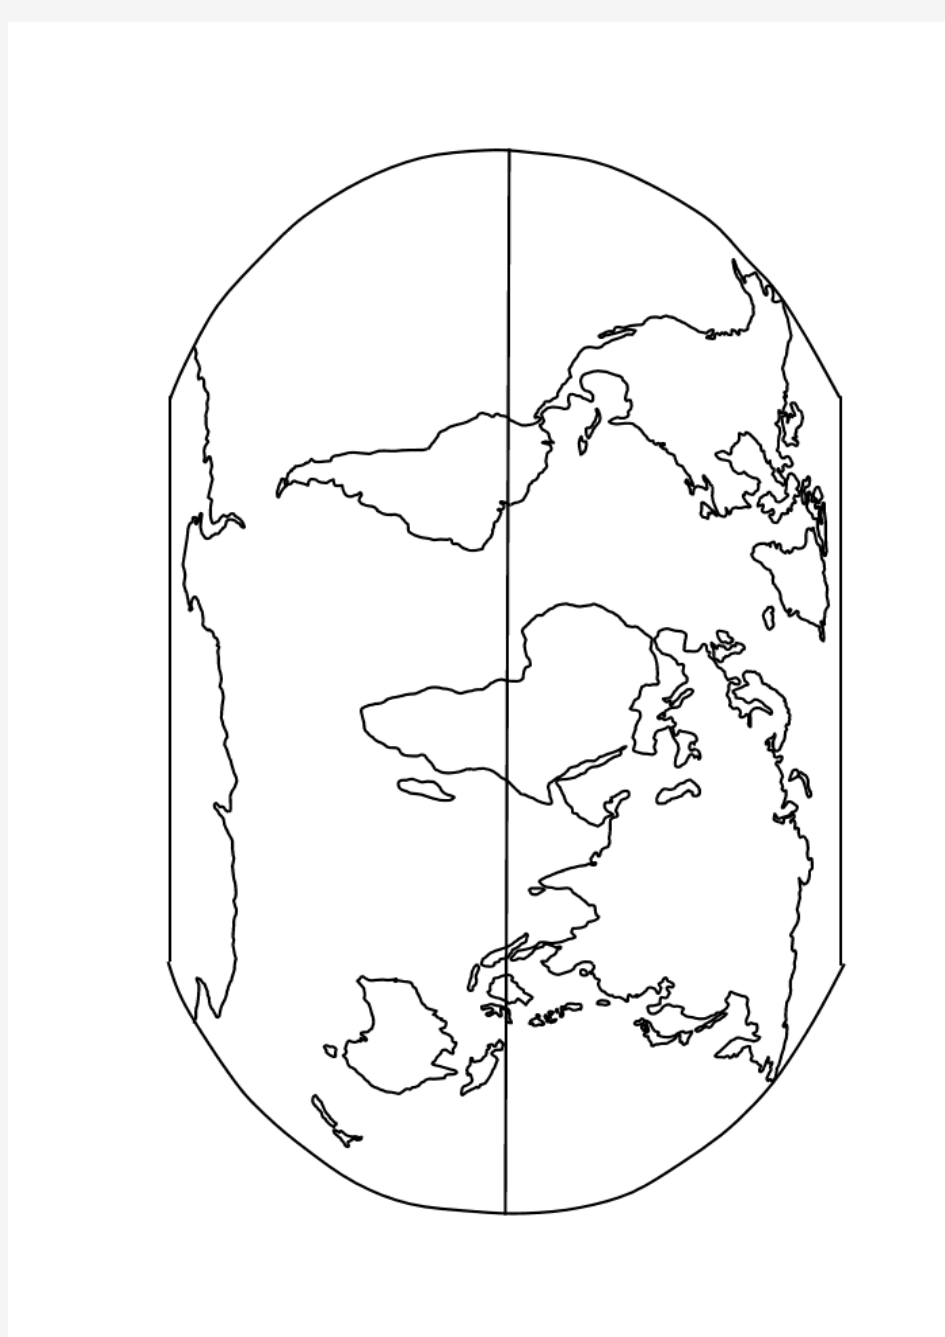 世界地图空白图(高清版)分析